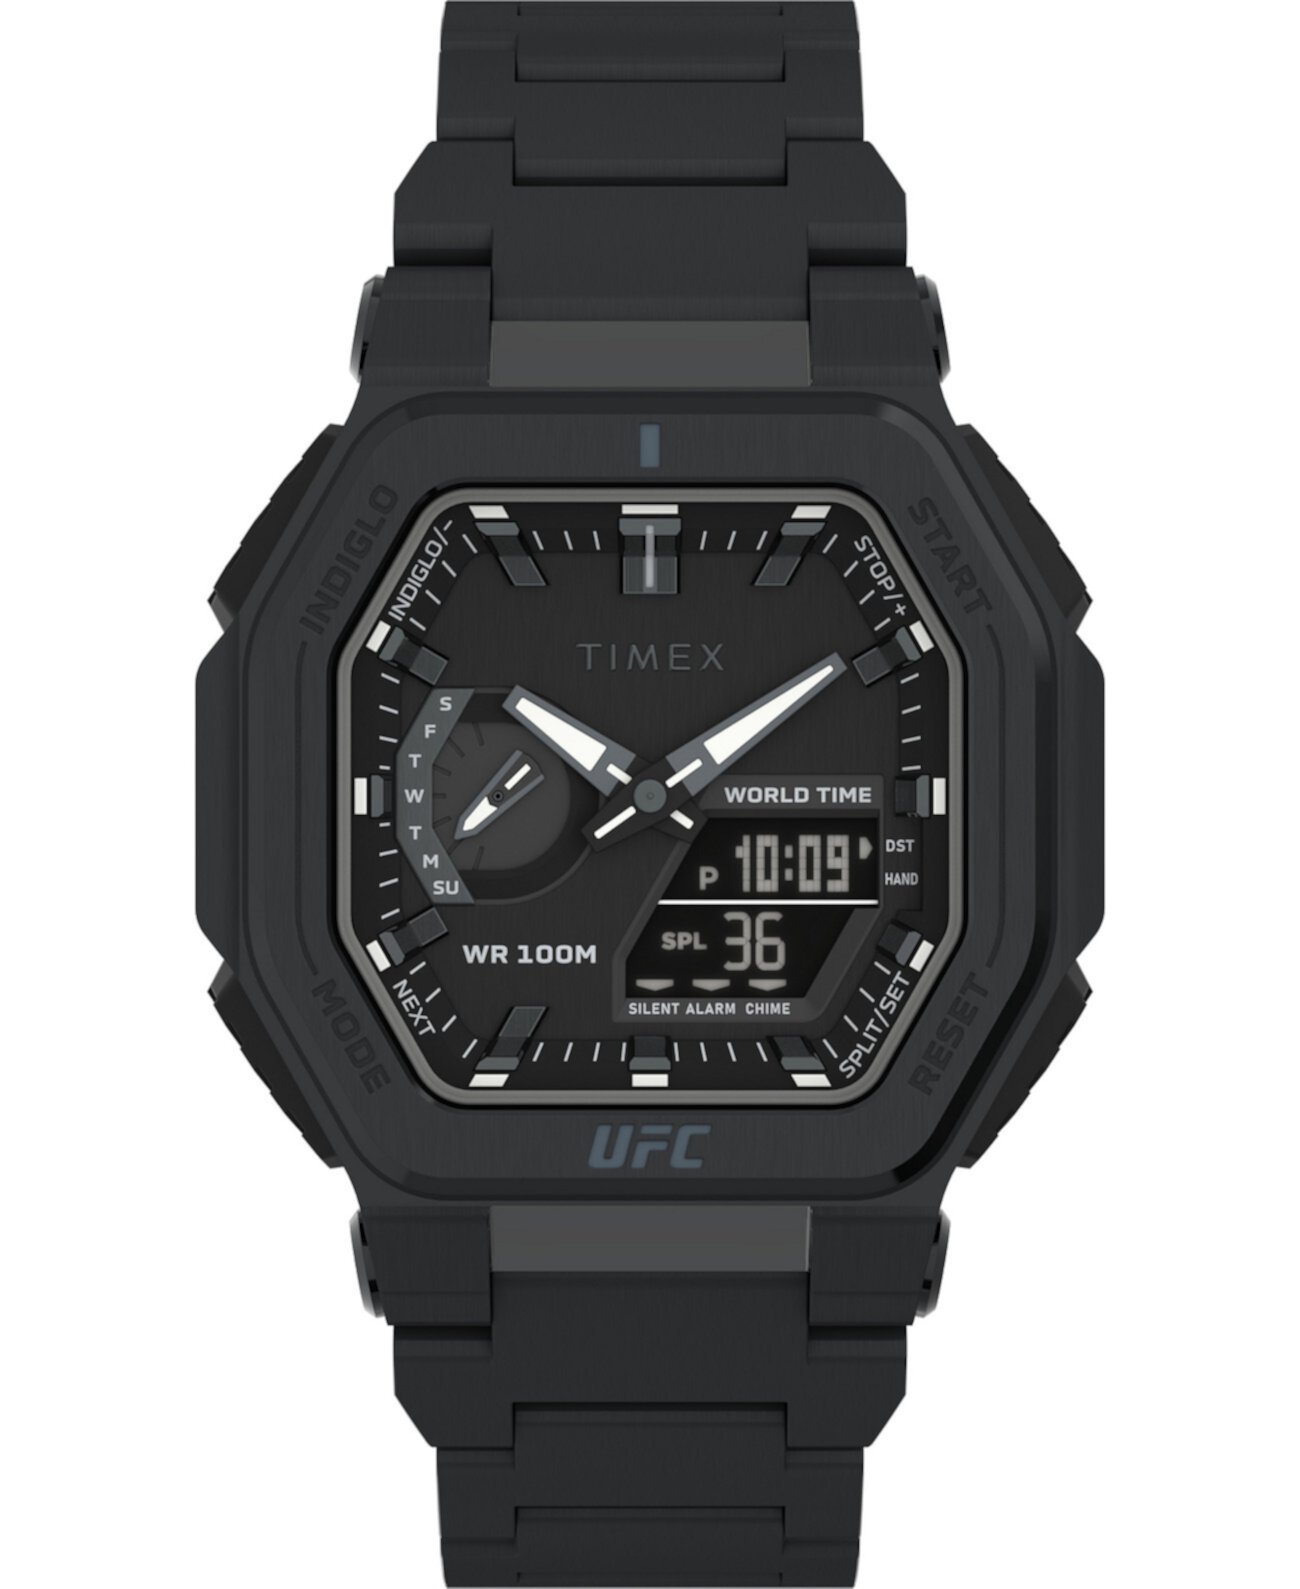 Мужские аналогово-цифровые часы UFC Colossus из нержавеющей стали, черный цвет, 45 мм Timex